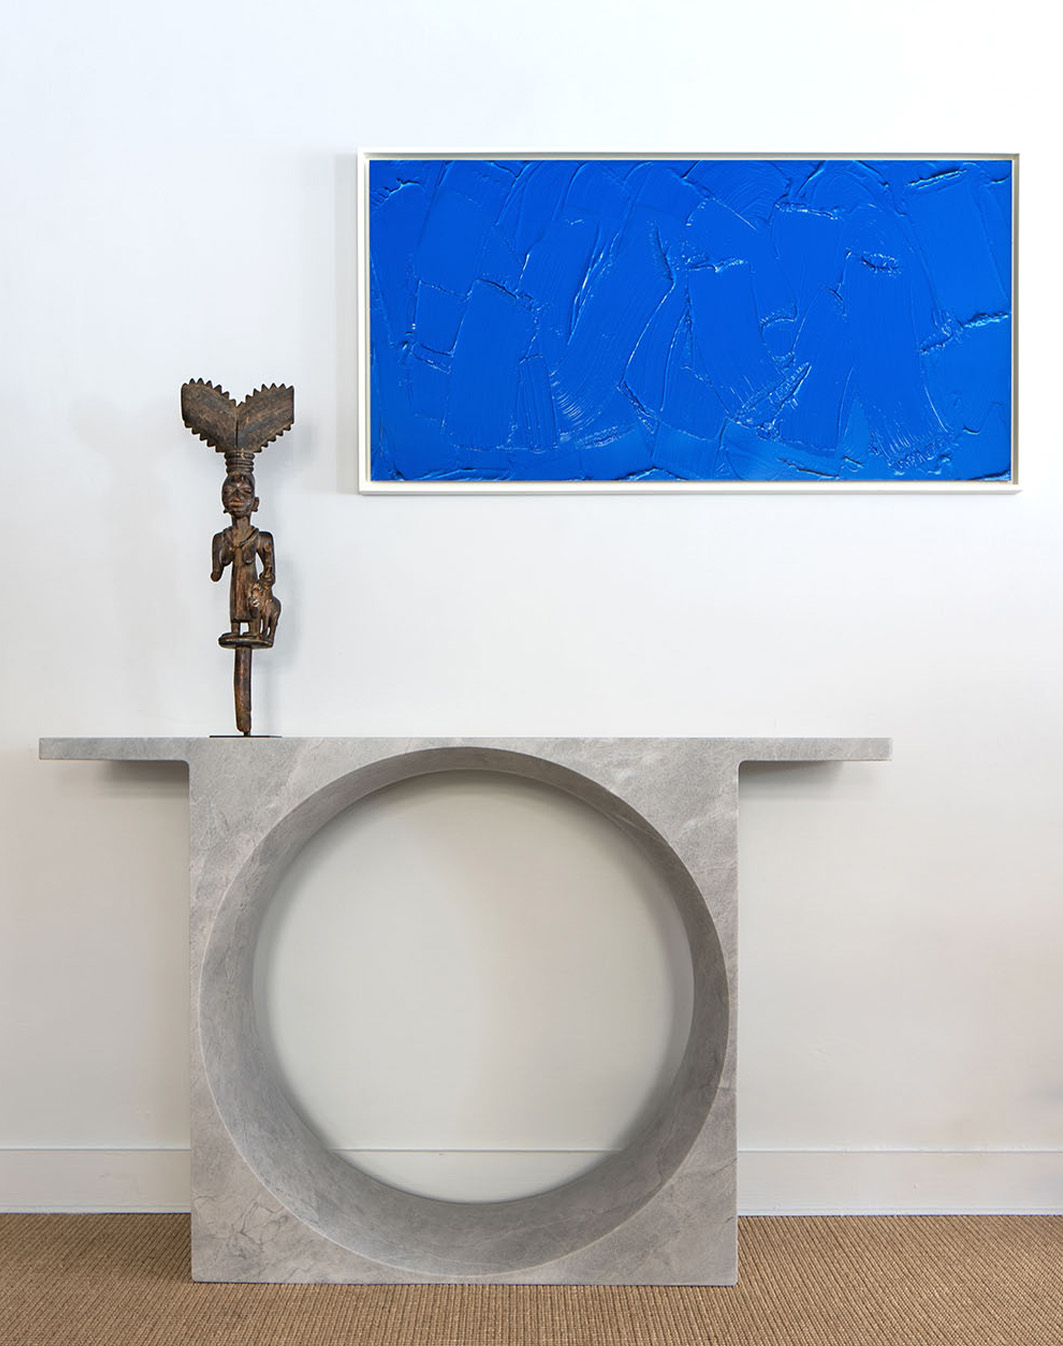 Olivier Gagnère - Lucas Ratton x kamel mennour x Galerie kreo @Saint-Tropez